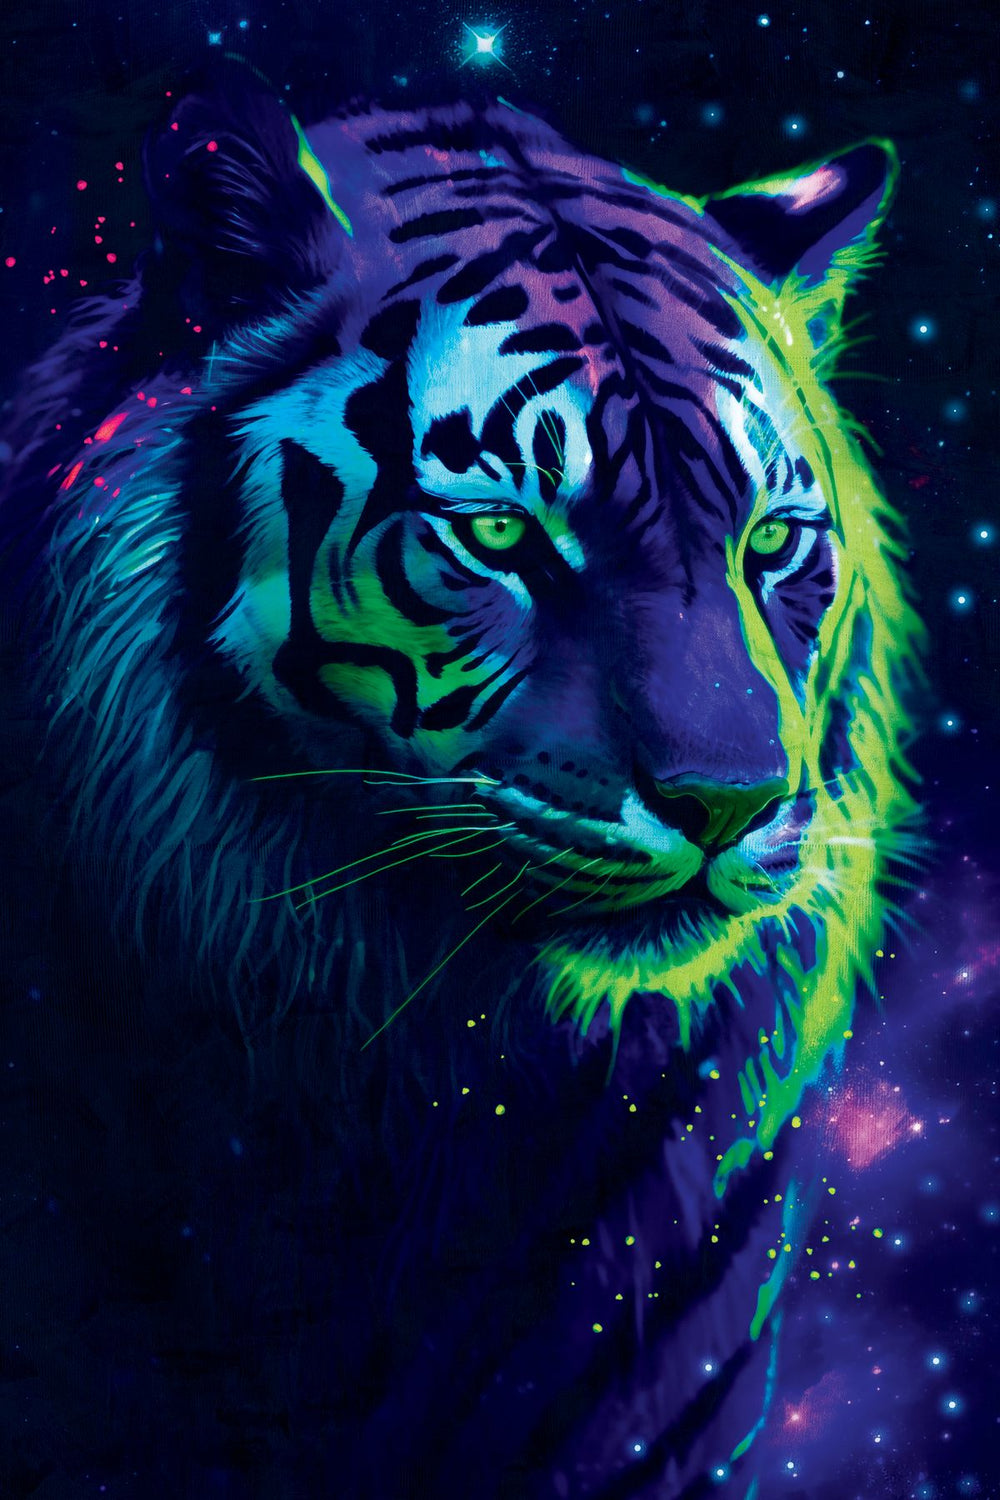 Cosmic Tiger III